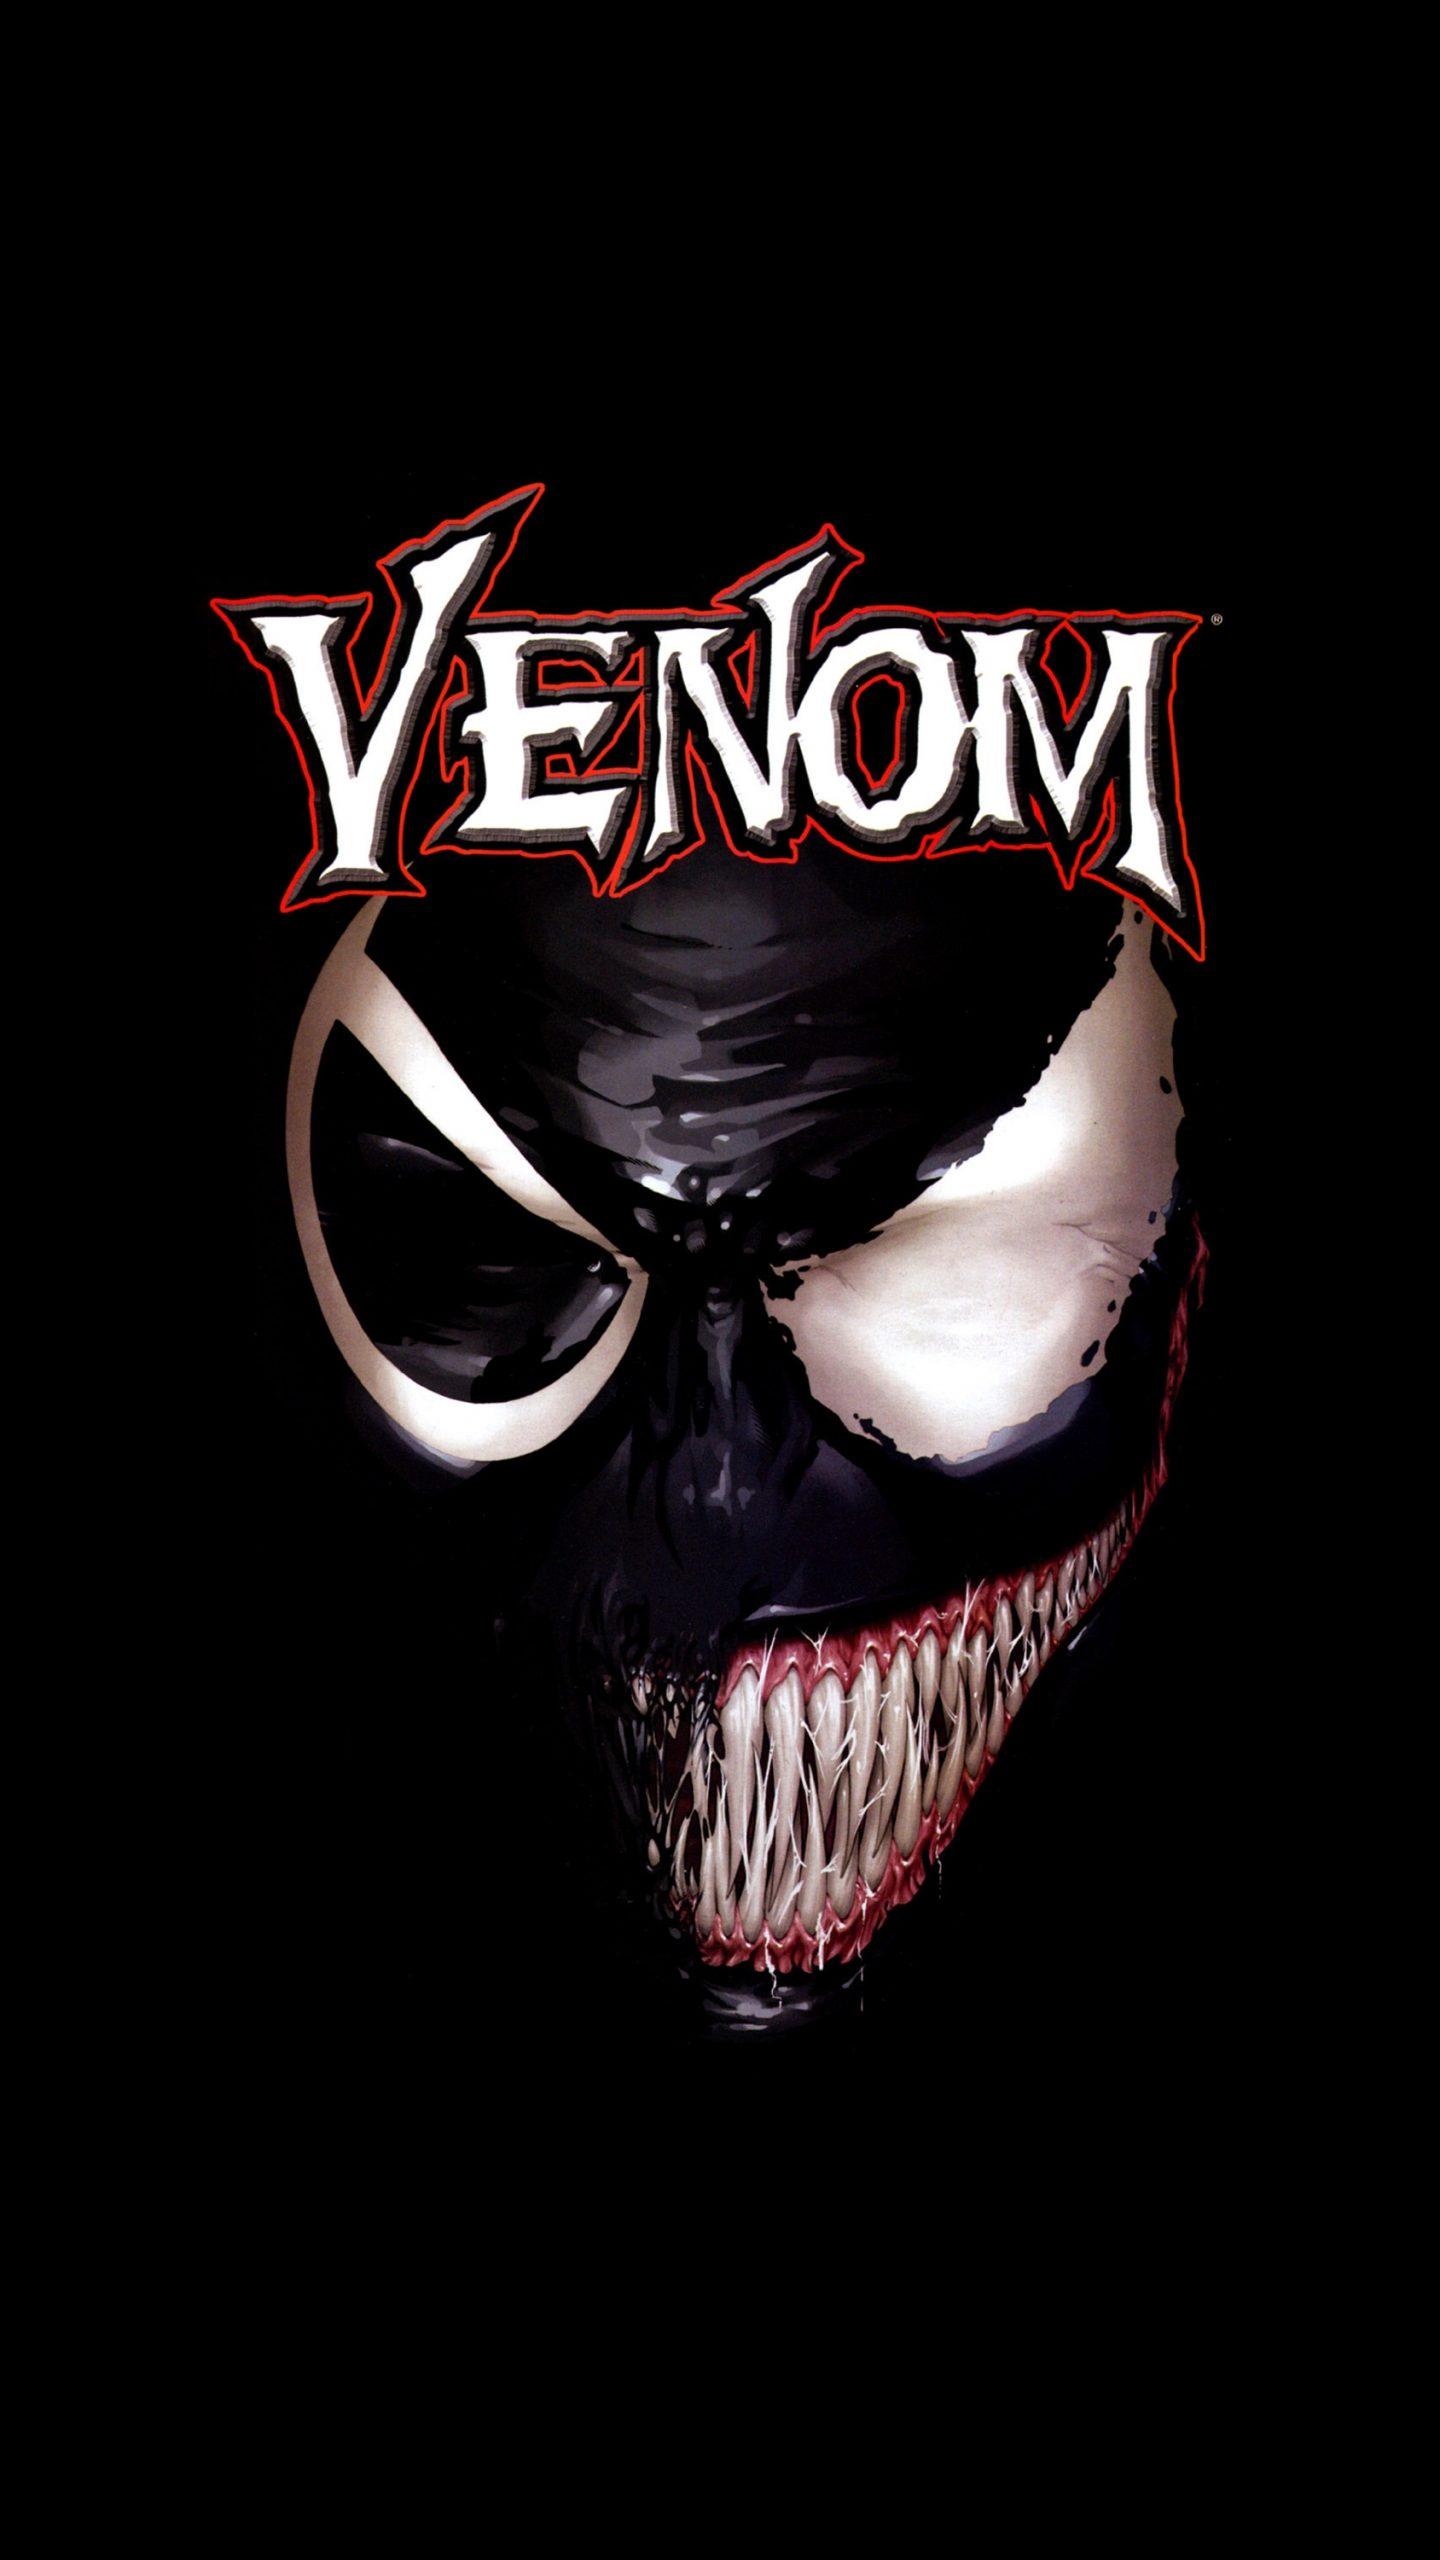 Venom Movie Black Poster 4K Wallpaper